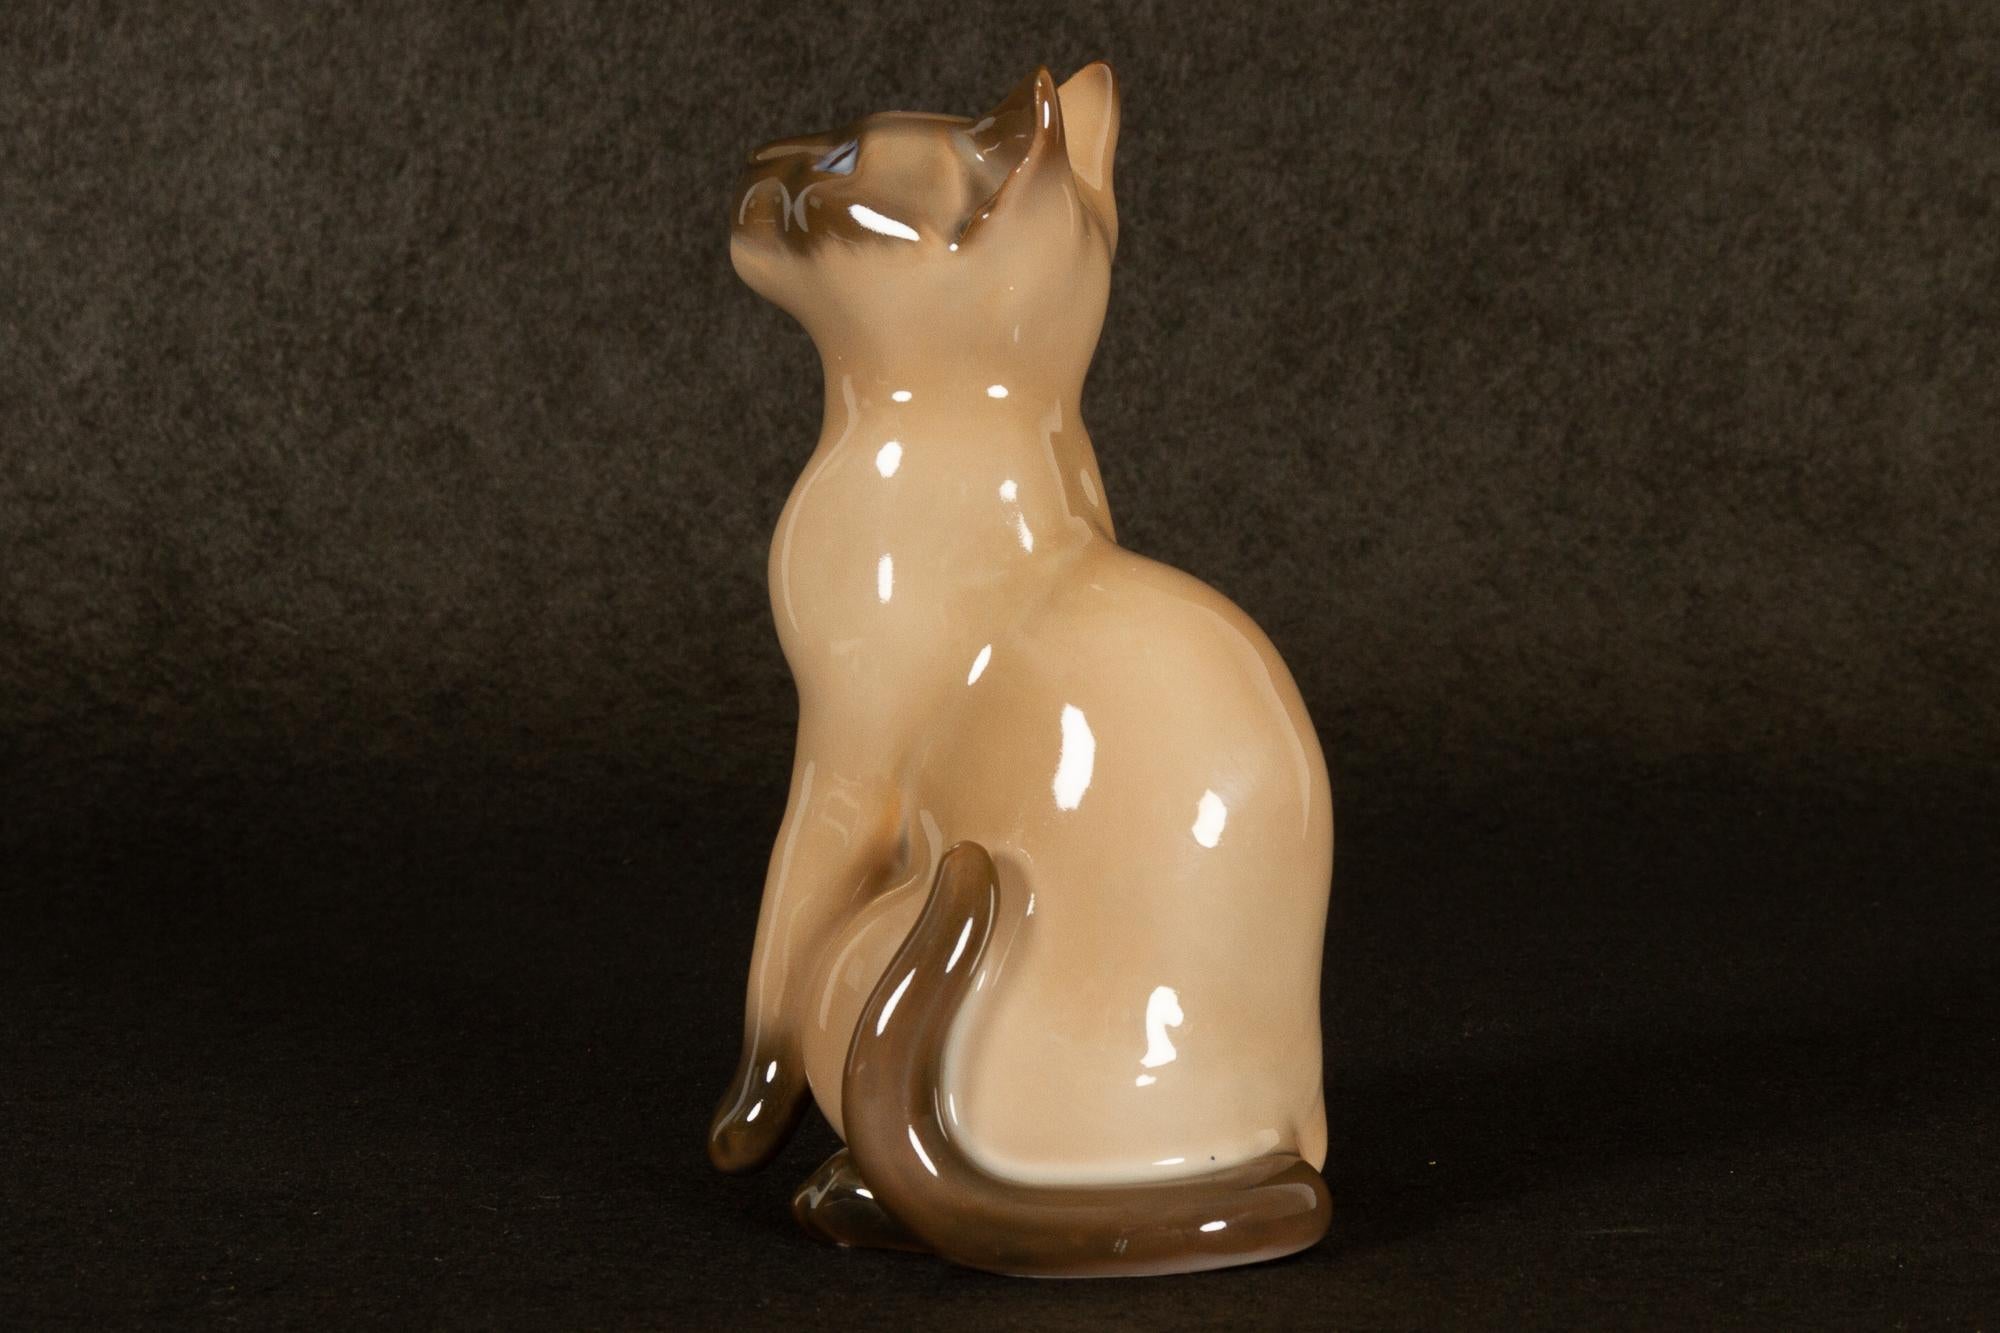 Vieille figurine en porcelaine danoise chat siamois par Bing & Grøndahl.
Figurine en porcelaine représentant un chat siamois, conçue par l'artiste Svend Jespersen dans les années 1960 et fabriquée par le fabricant danois Bing & Grøndahl à